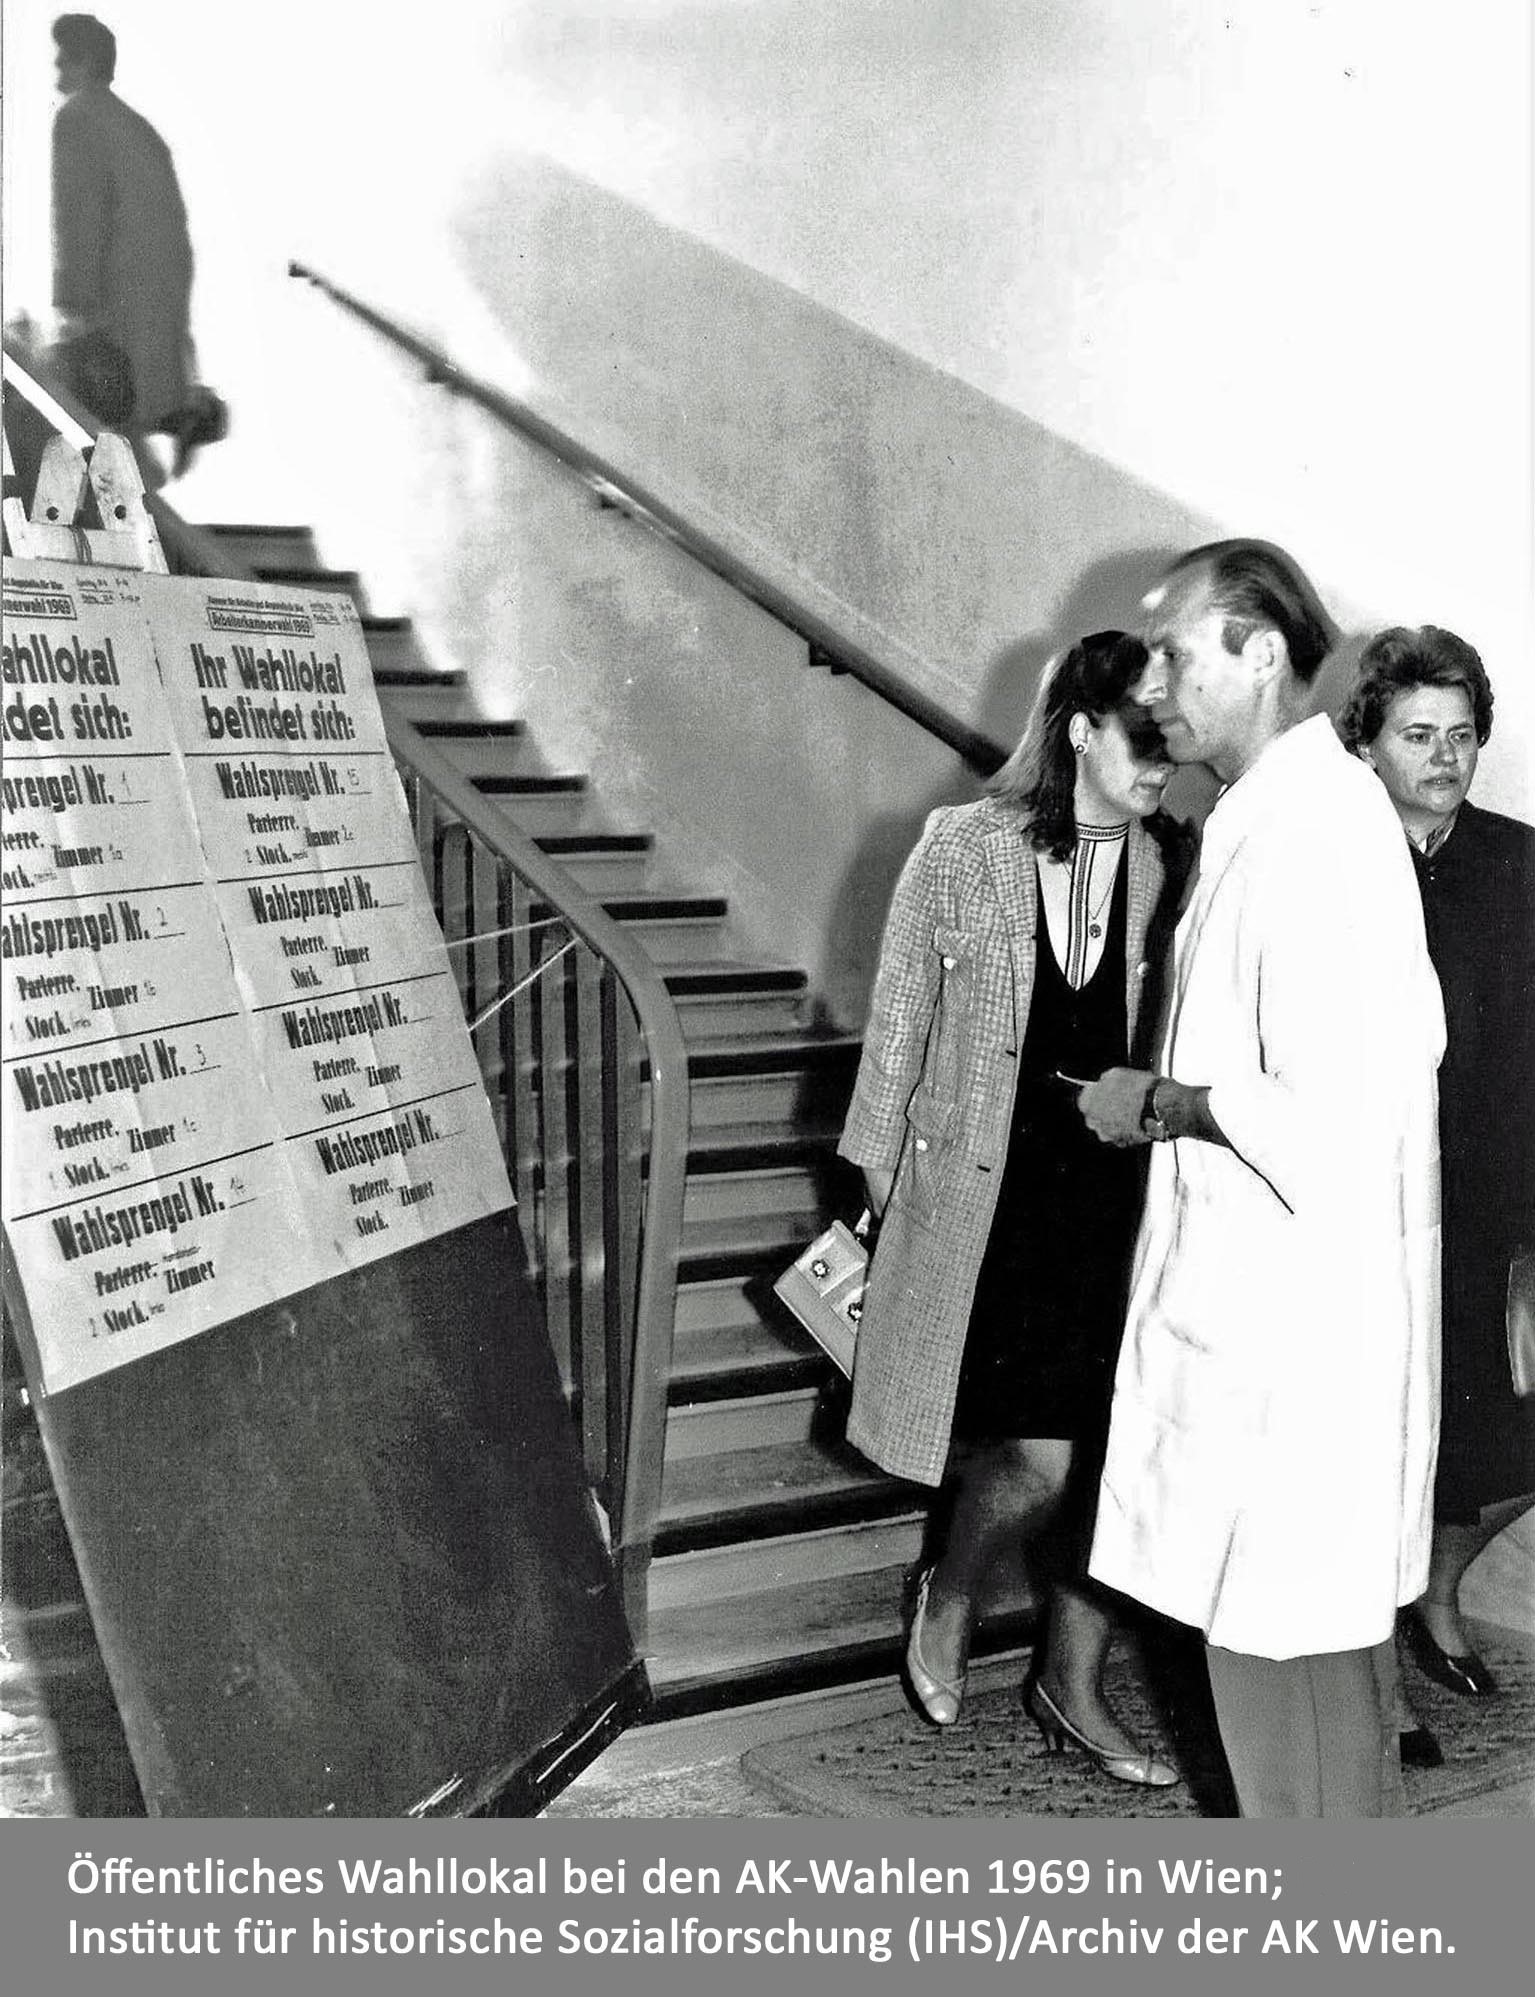 AK-Wahlen 1969. Symbolbild für den Sozialstaat und seine Geschichte.